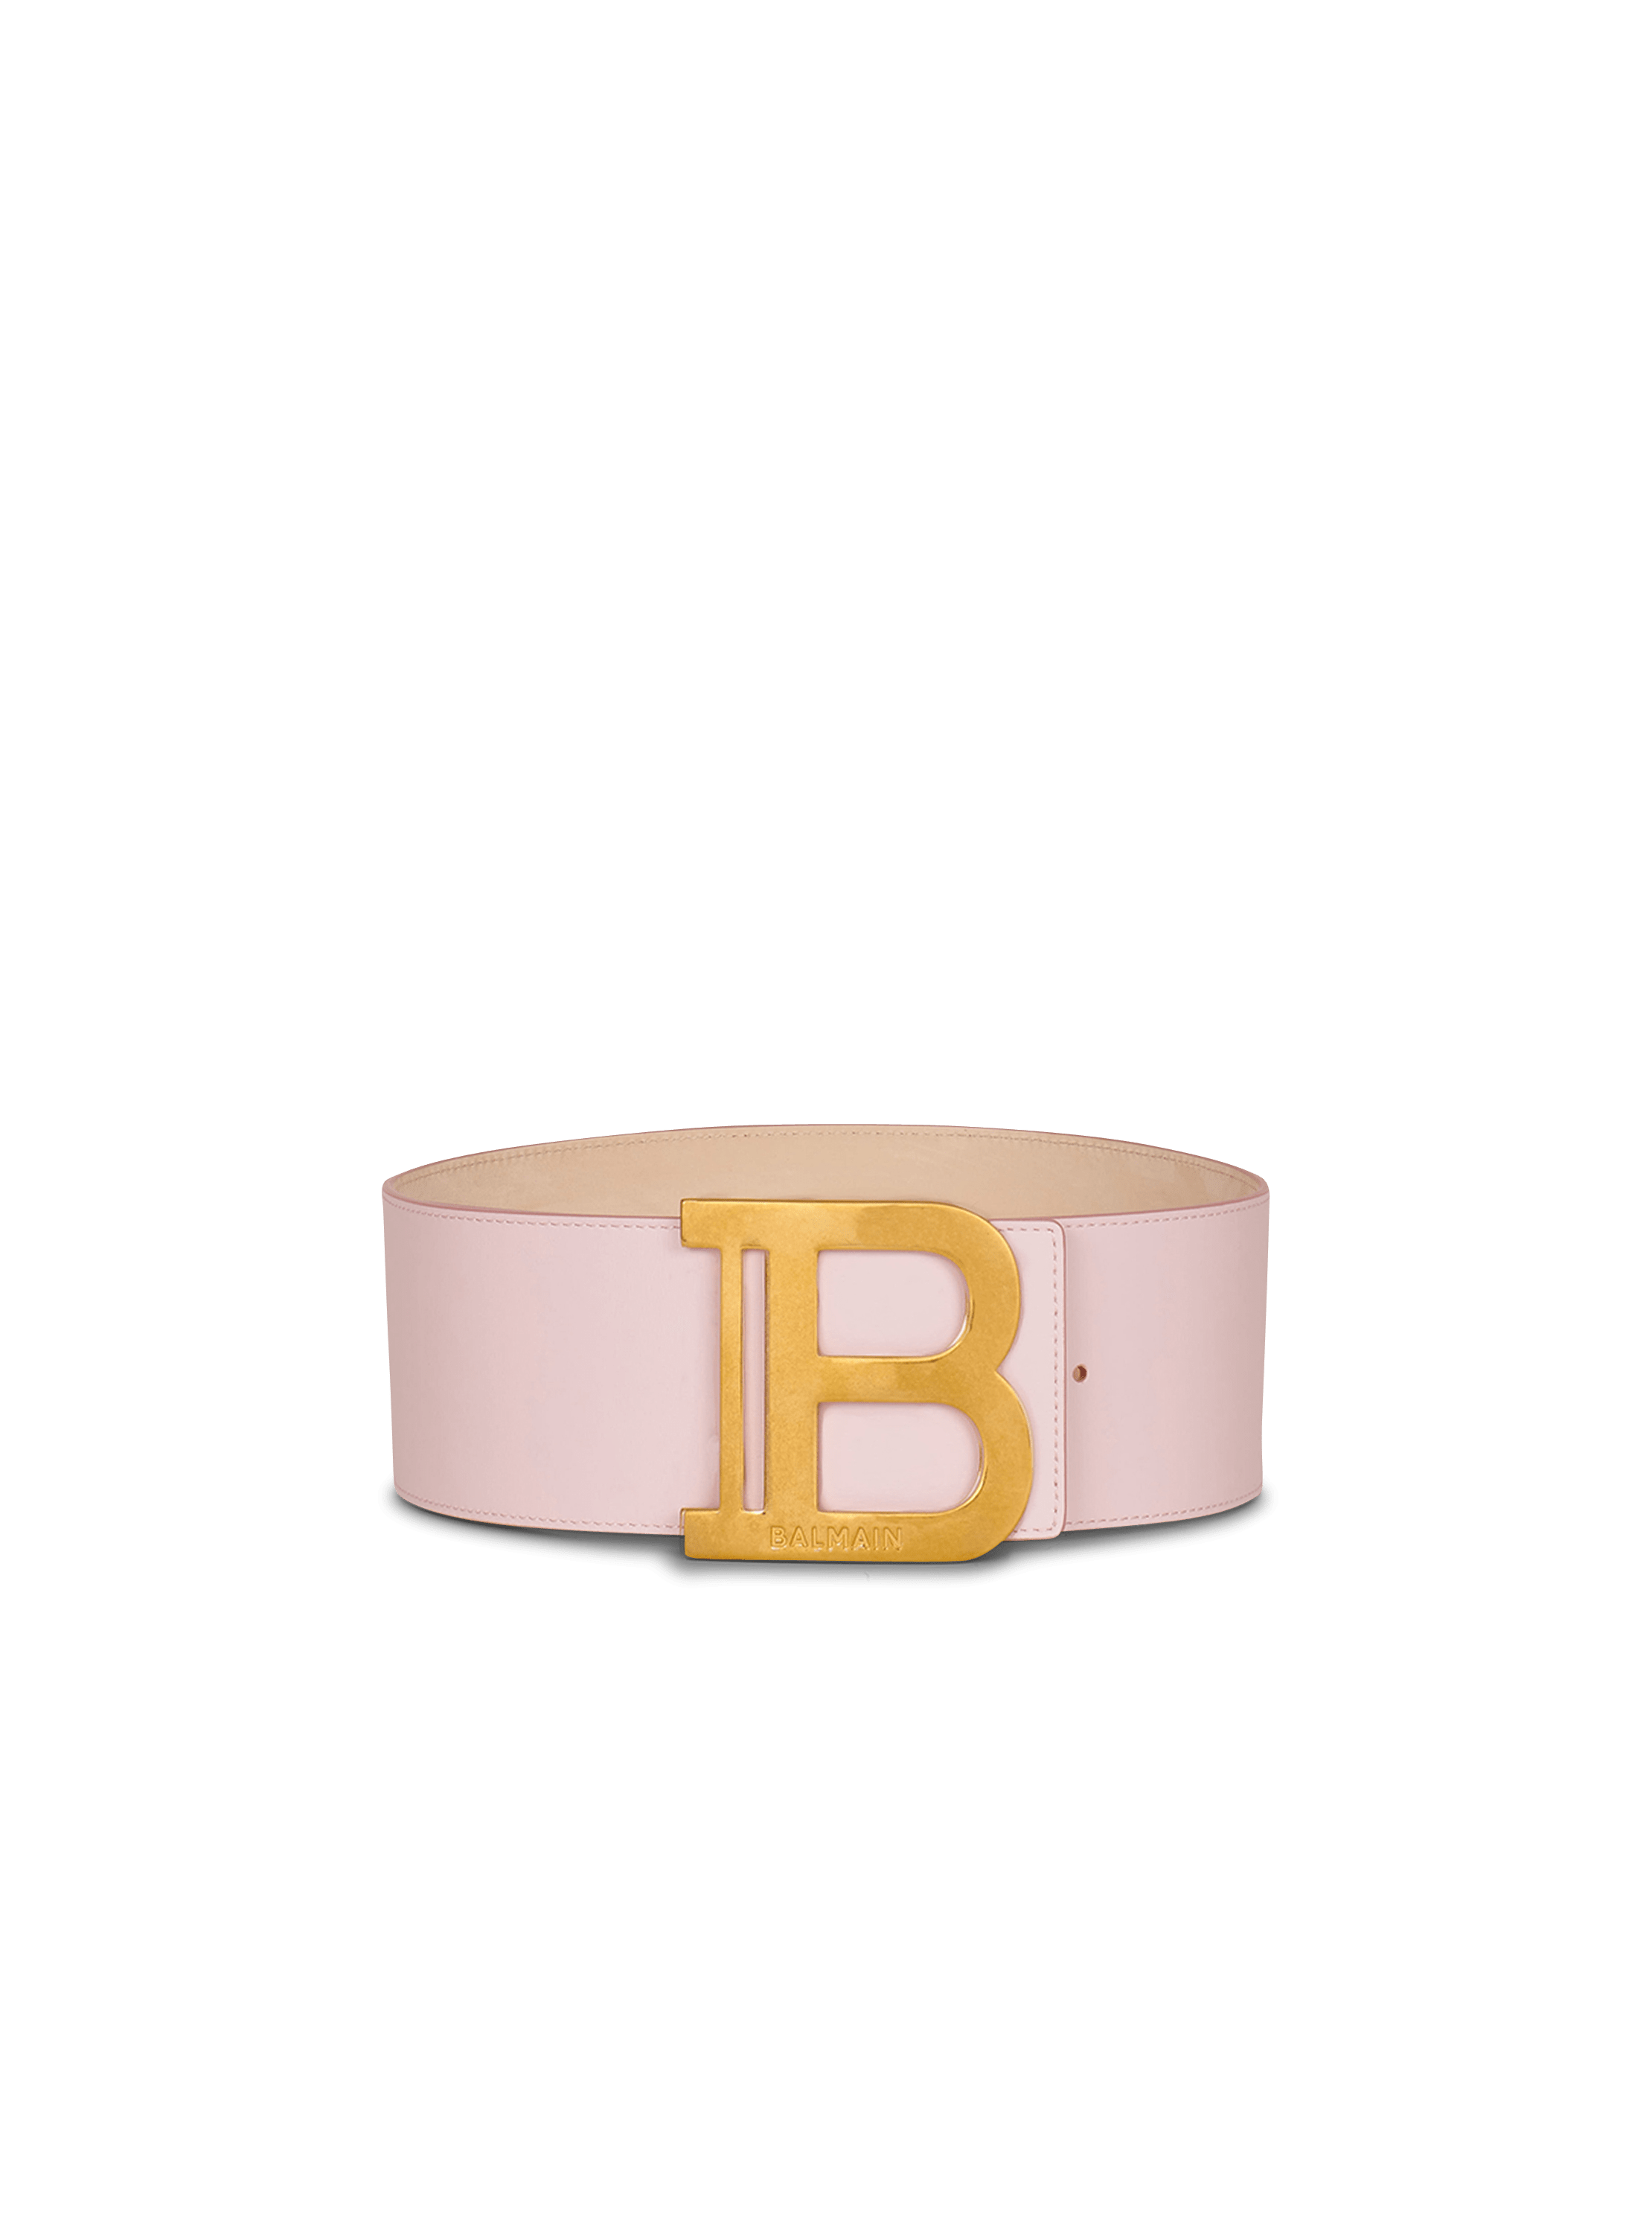 B-Belt 皮革腰带